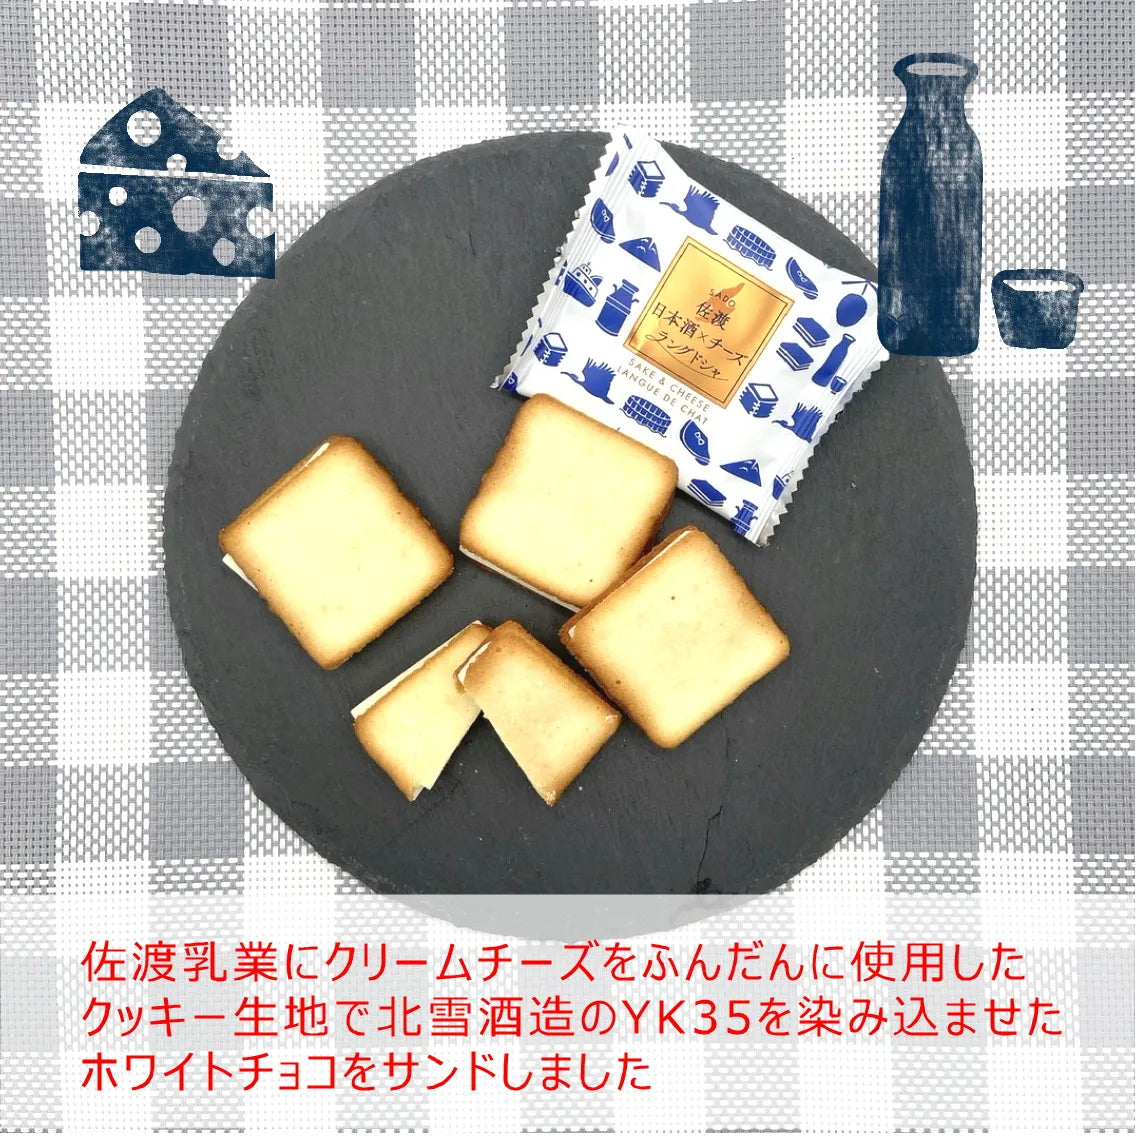 「佐渡日本酒×チーズラングドシャ(8枚入り)」 口の中で香り高く広がる大吟醸酒の贅沢スイーツ